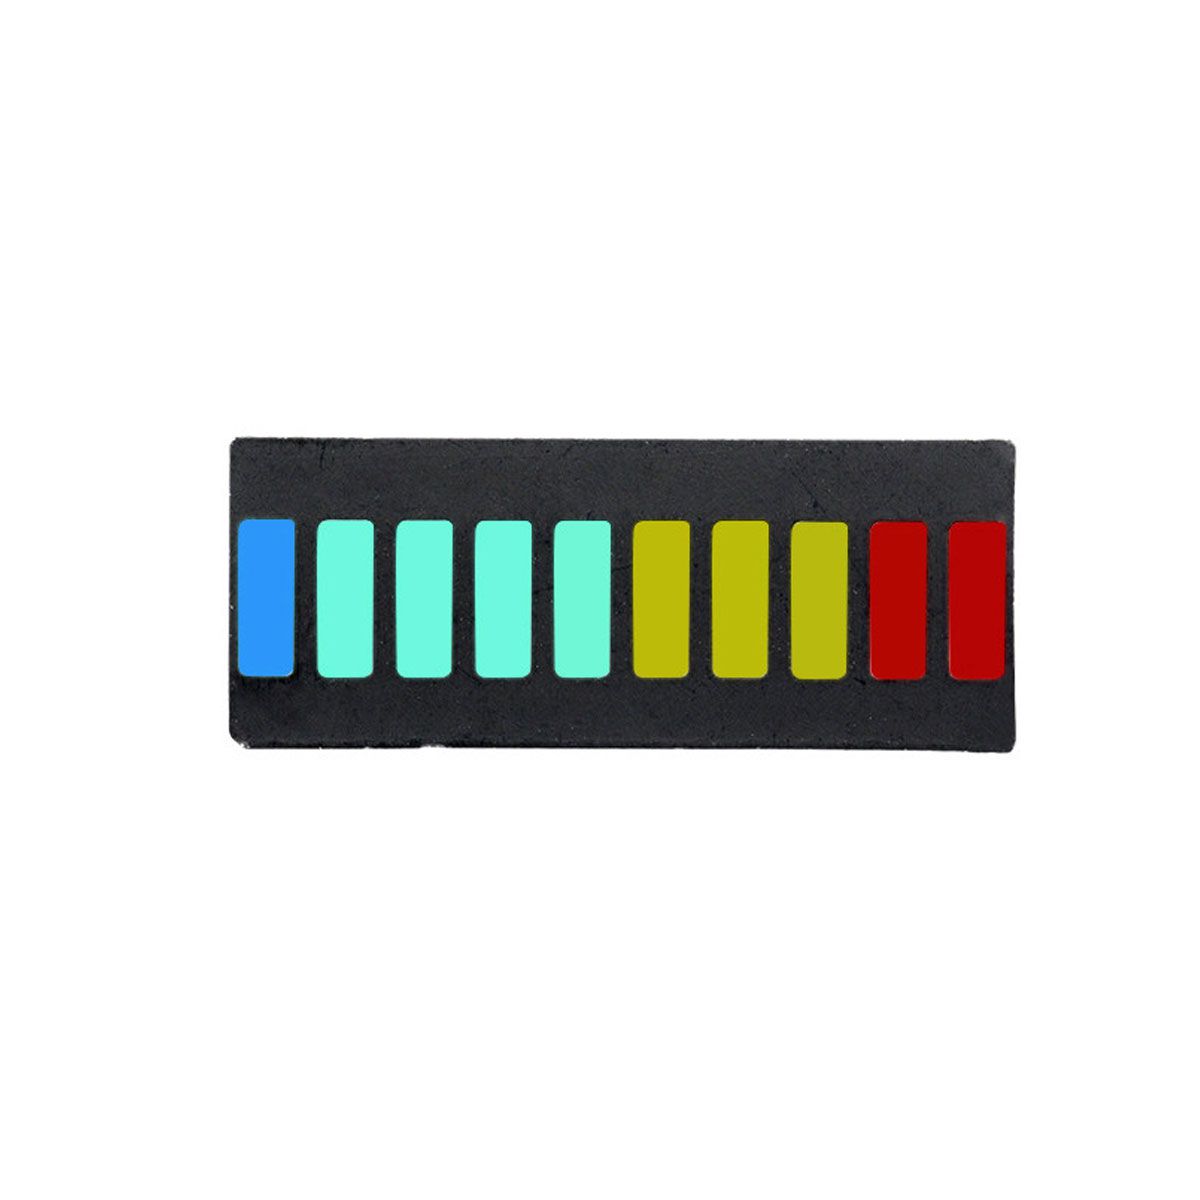 Display Bar Graph / Barra de Progresso com 4 cores 10 segmentos - Comum